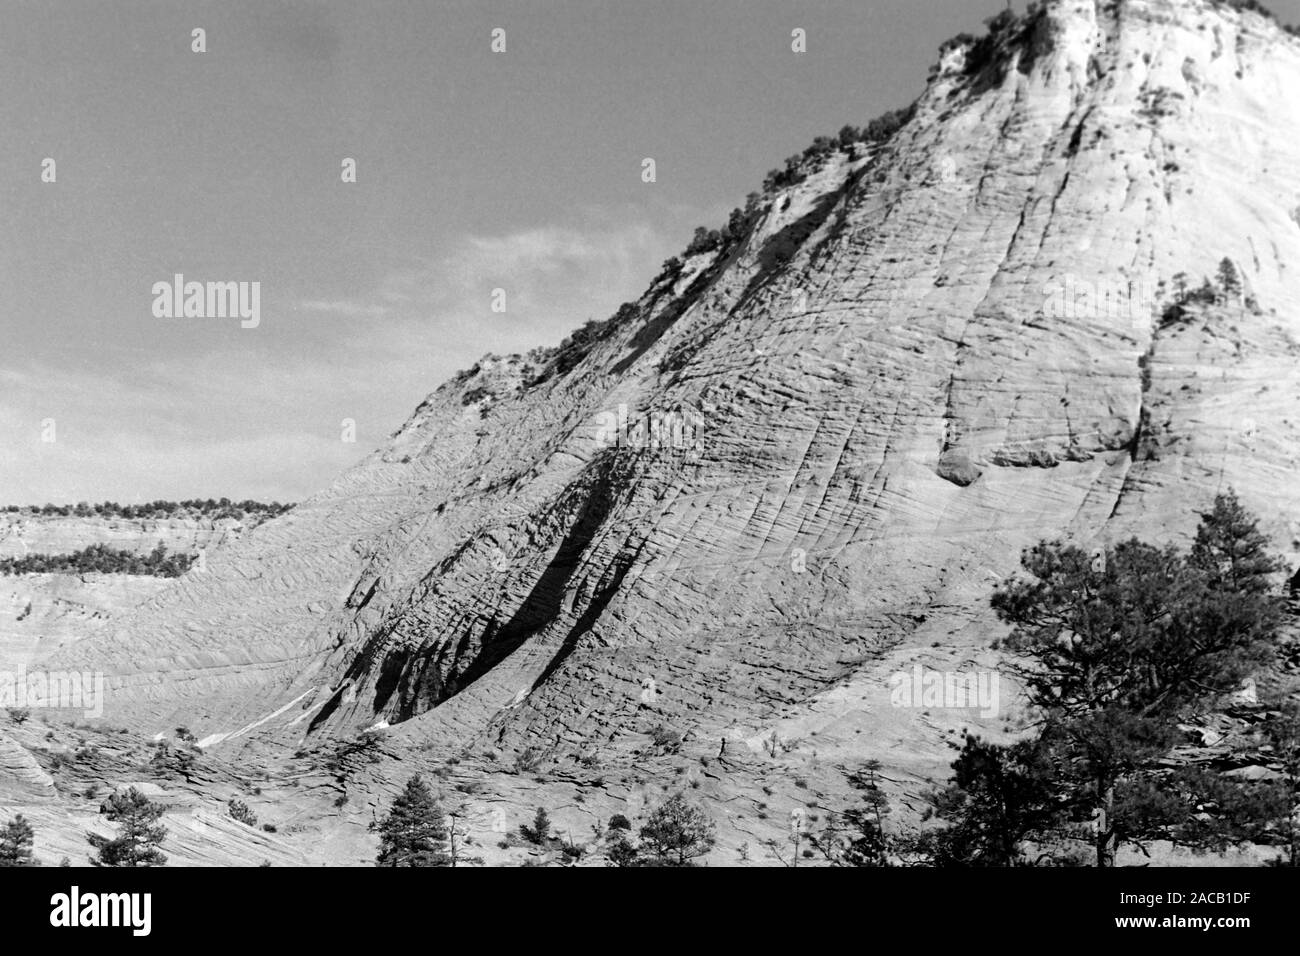 Unterwegs im Grenzgebiet Utah-Arizona bei Kanab, Zion Nationalpark, 1968. Roadtrip around the Utah-Arizona borderline in the Kanab area, Zion National Park, 1968. Stock Photo